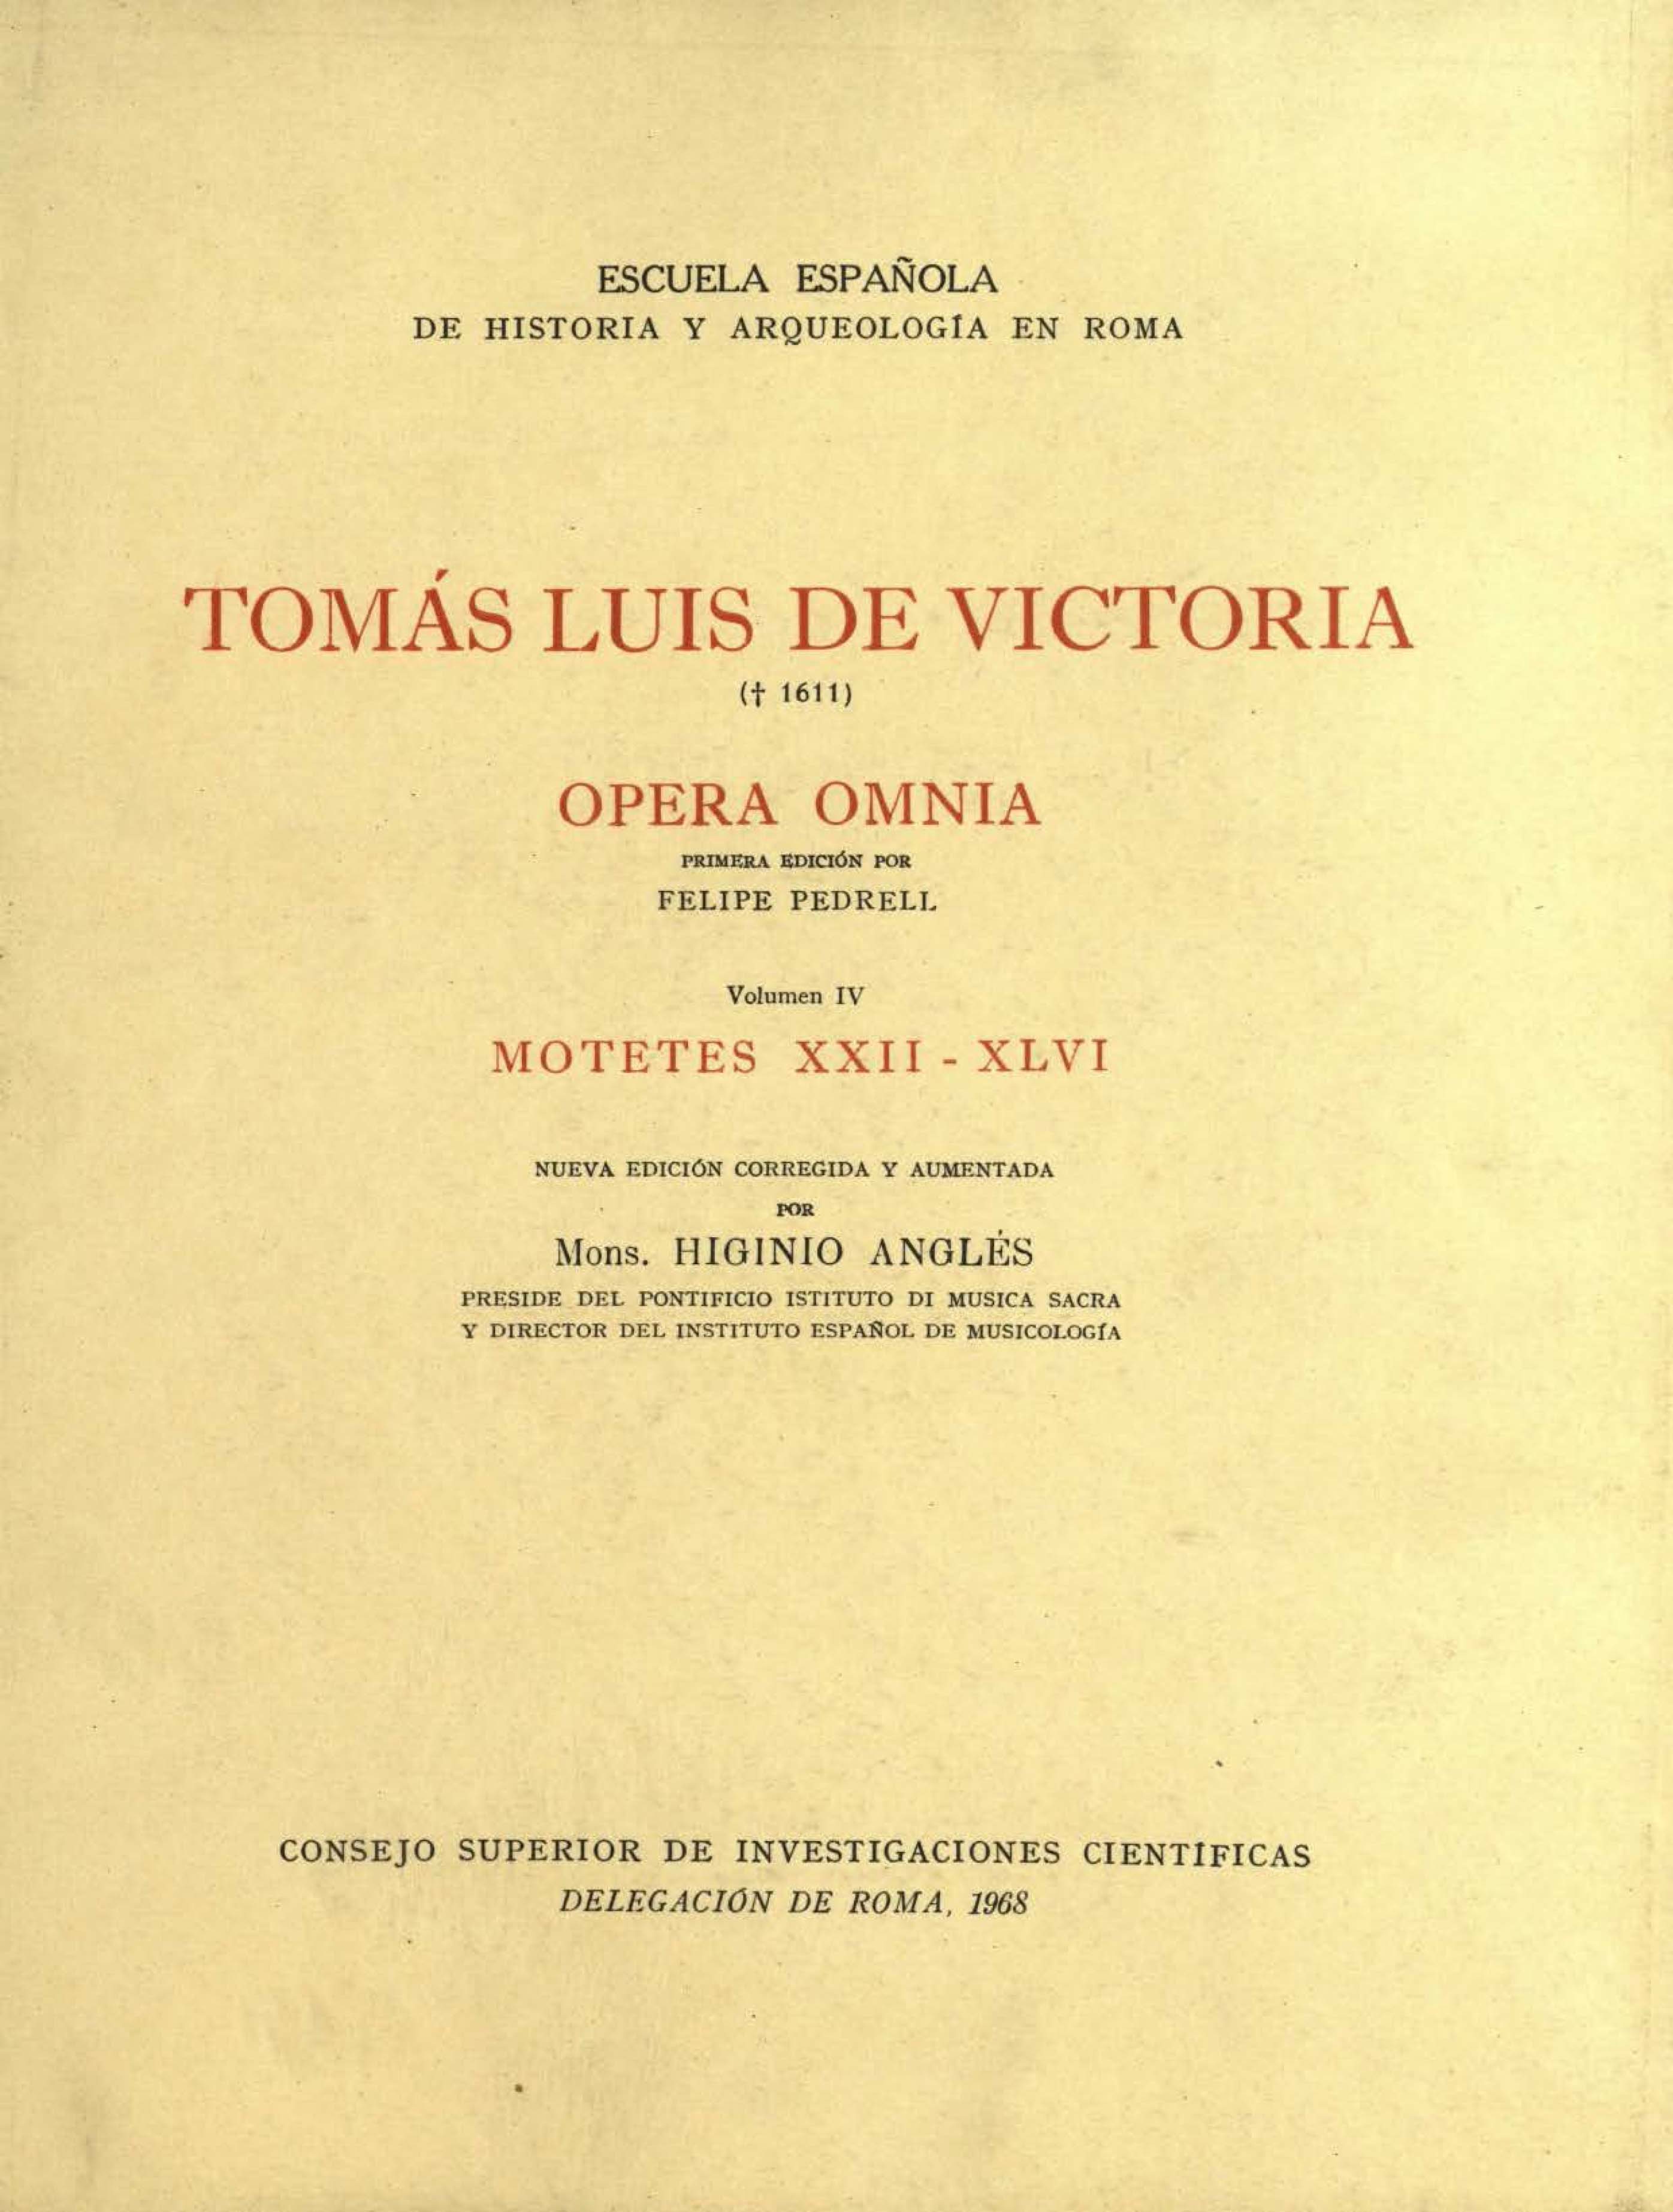 Opera Omnia. Volumen IV. Motetes XXII-XLVI